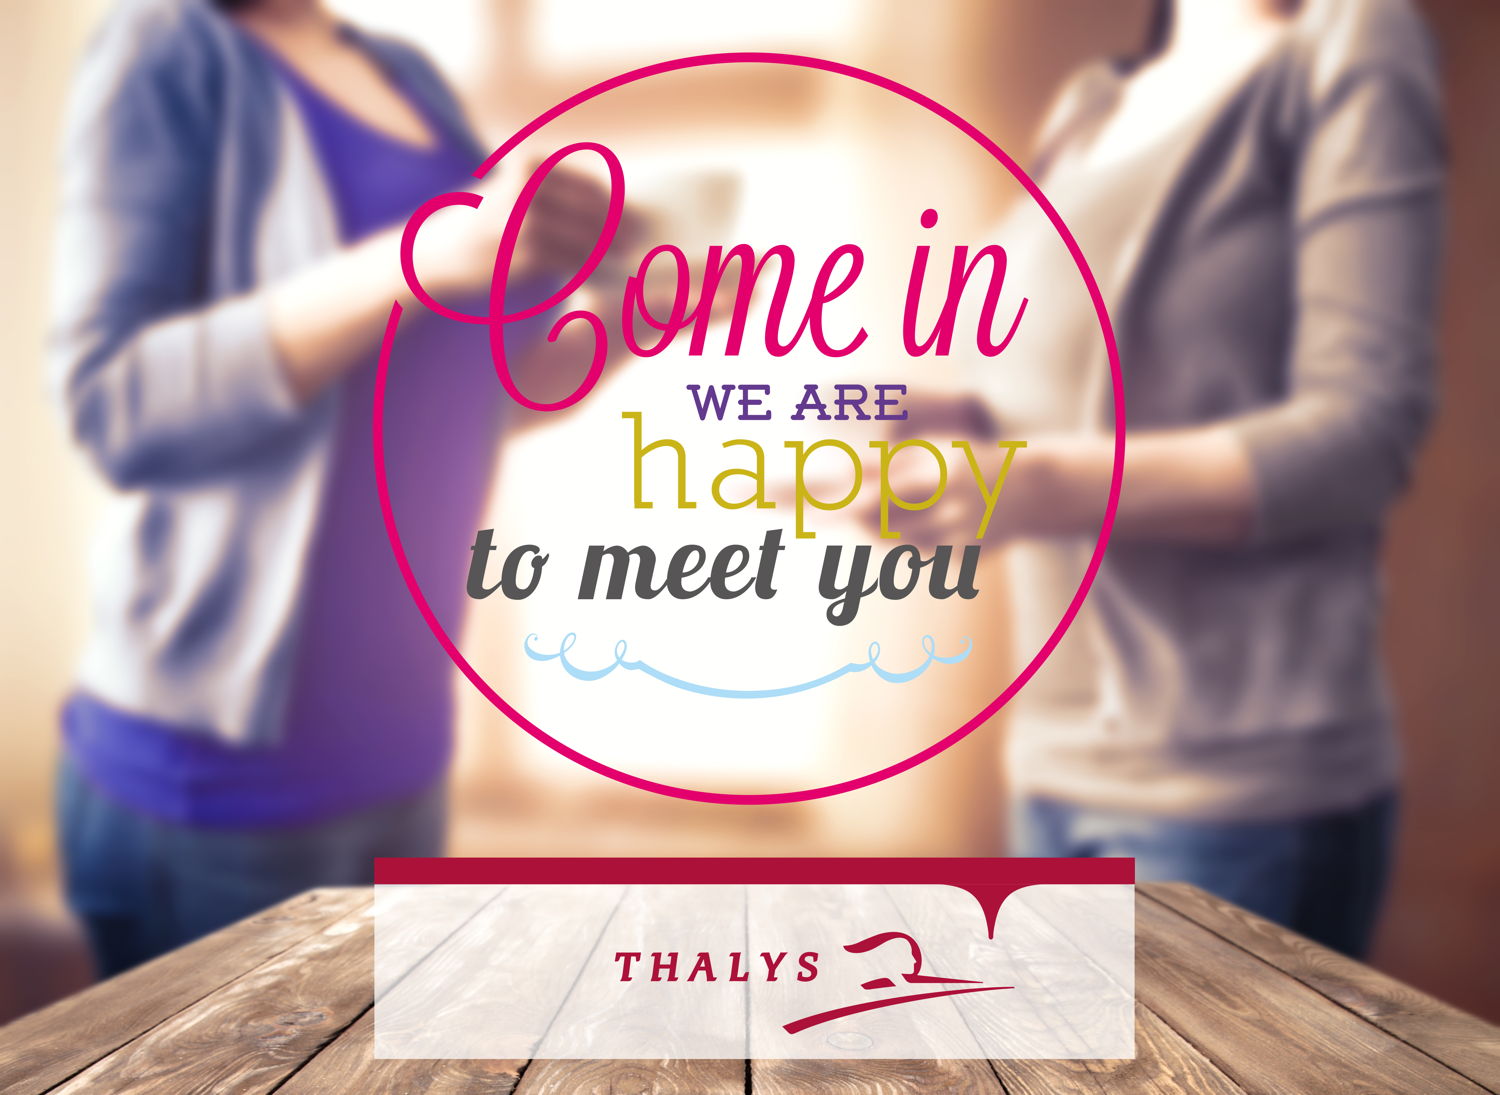 Bienvenue chez vous, une campagne de communication interne pour Thalys